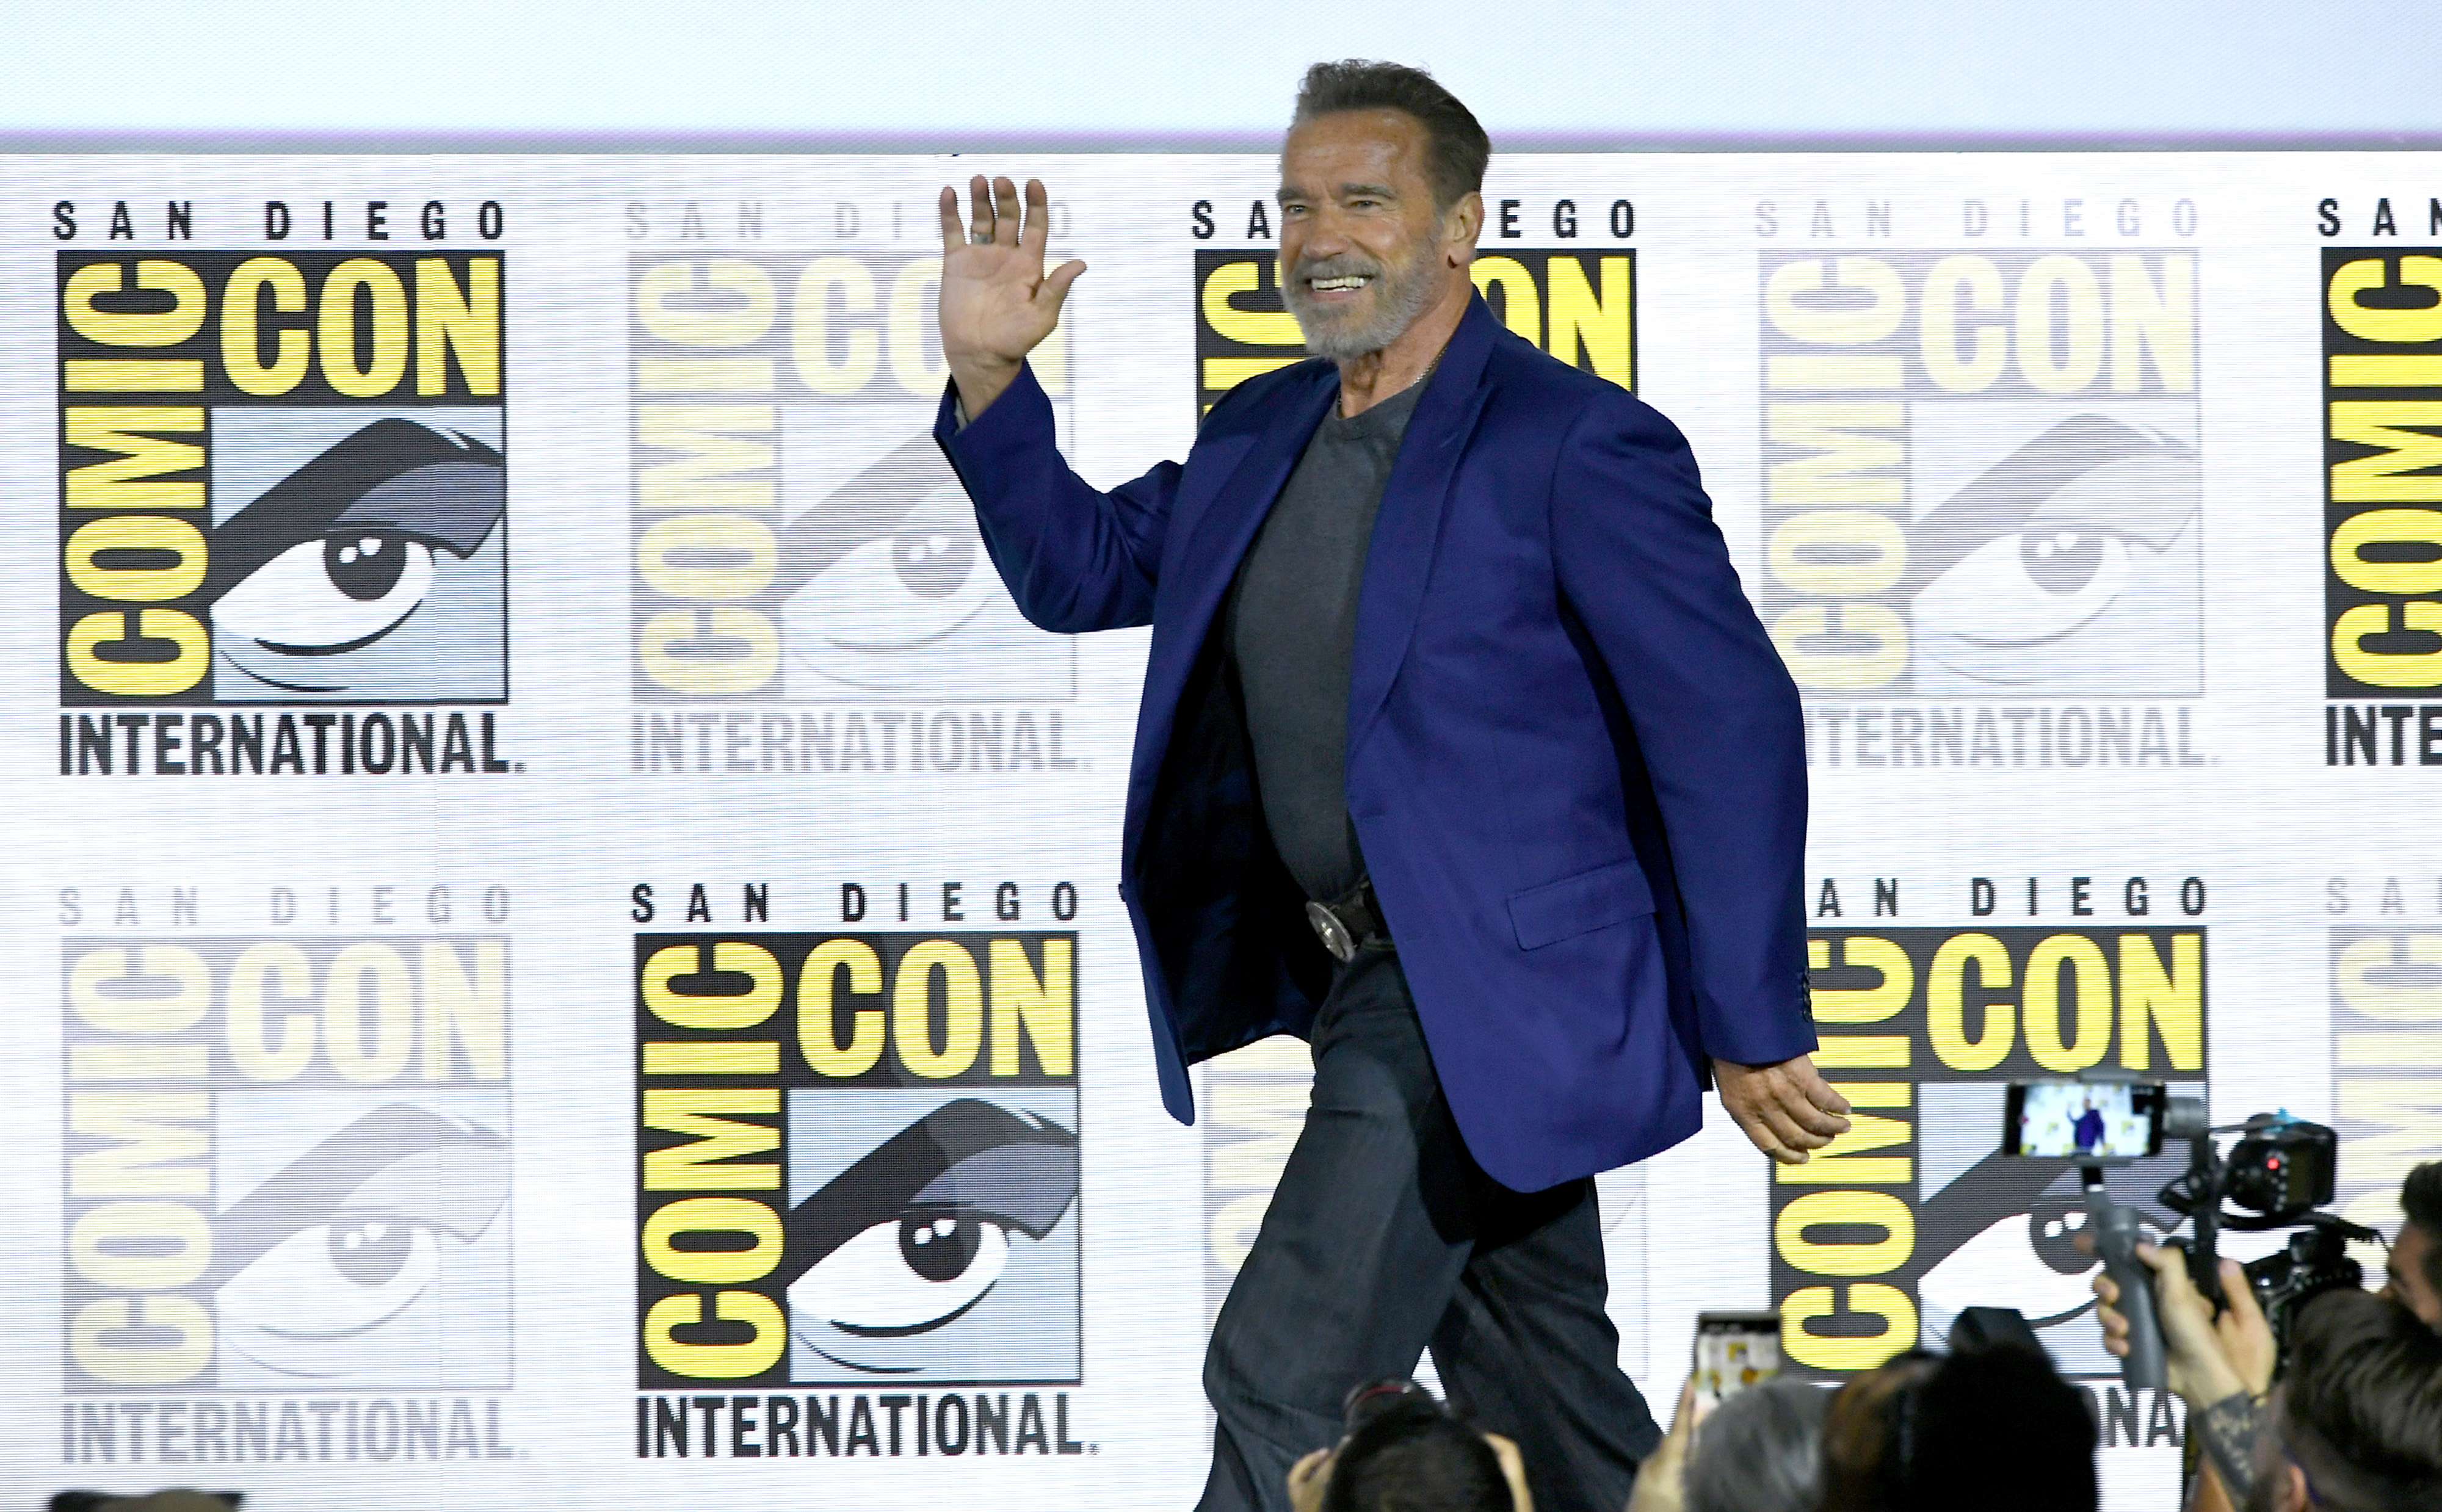  Arnold Schwarzenegger conquistó la Comic-Con de San Diego, con "Terminator: Dark Fate", la última entrega de esta saga de ciencia-ficción. (Foto Prensa Libre: AFP)